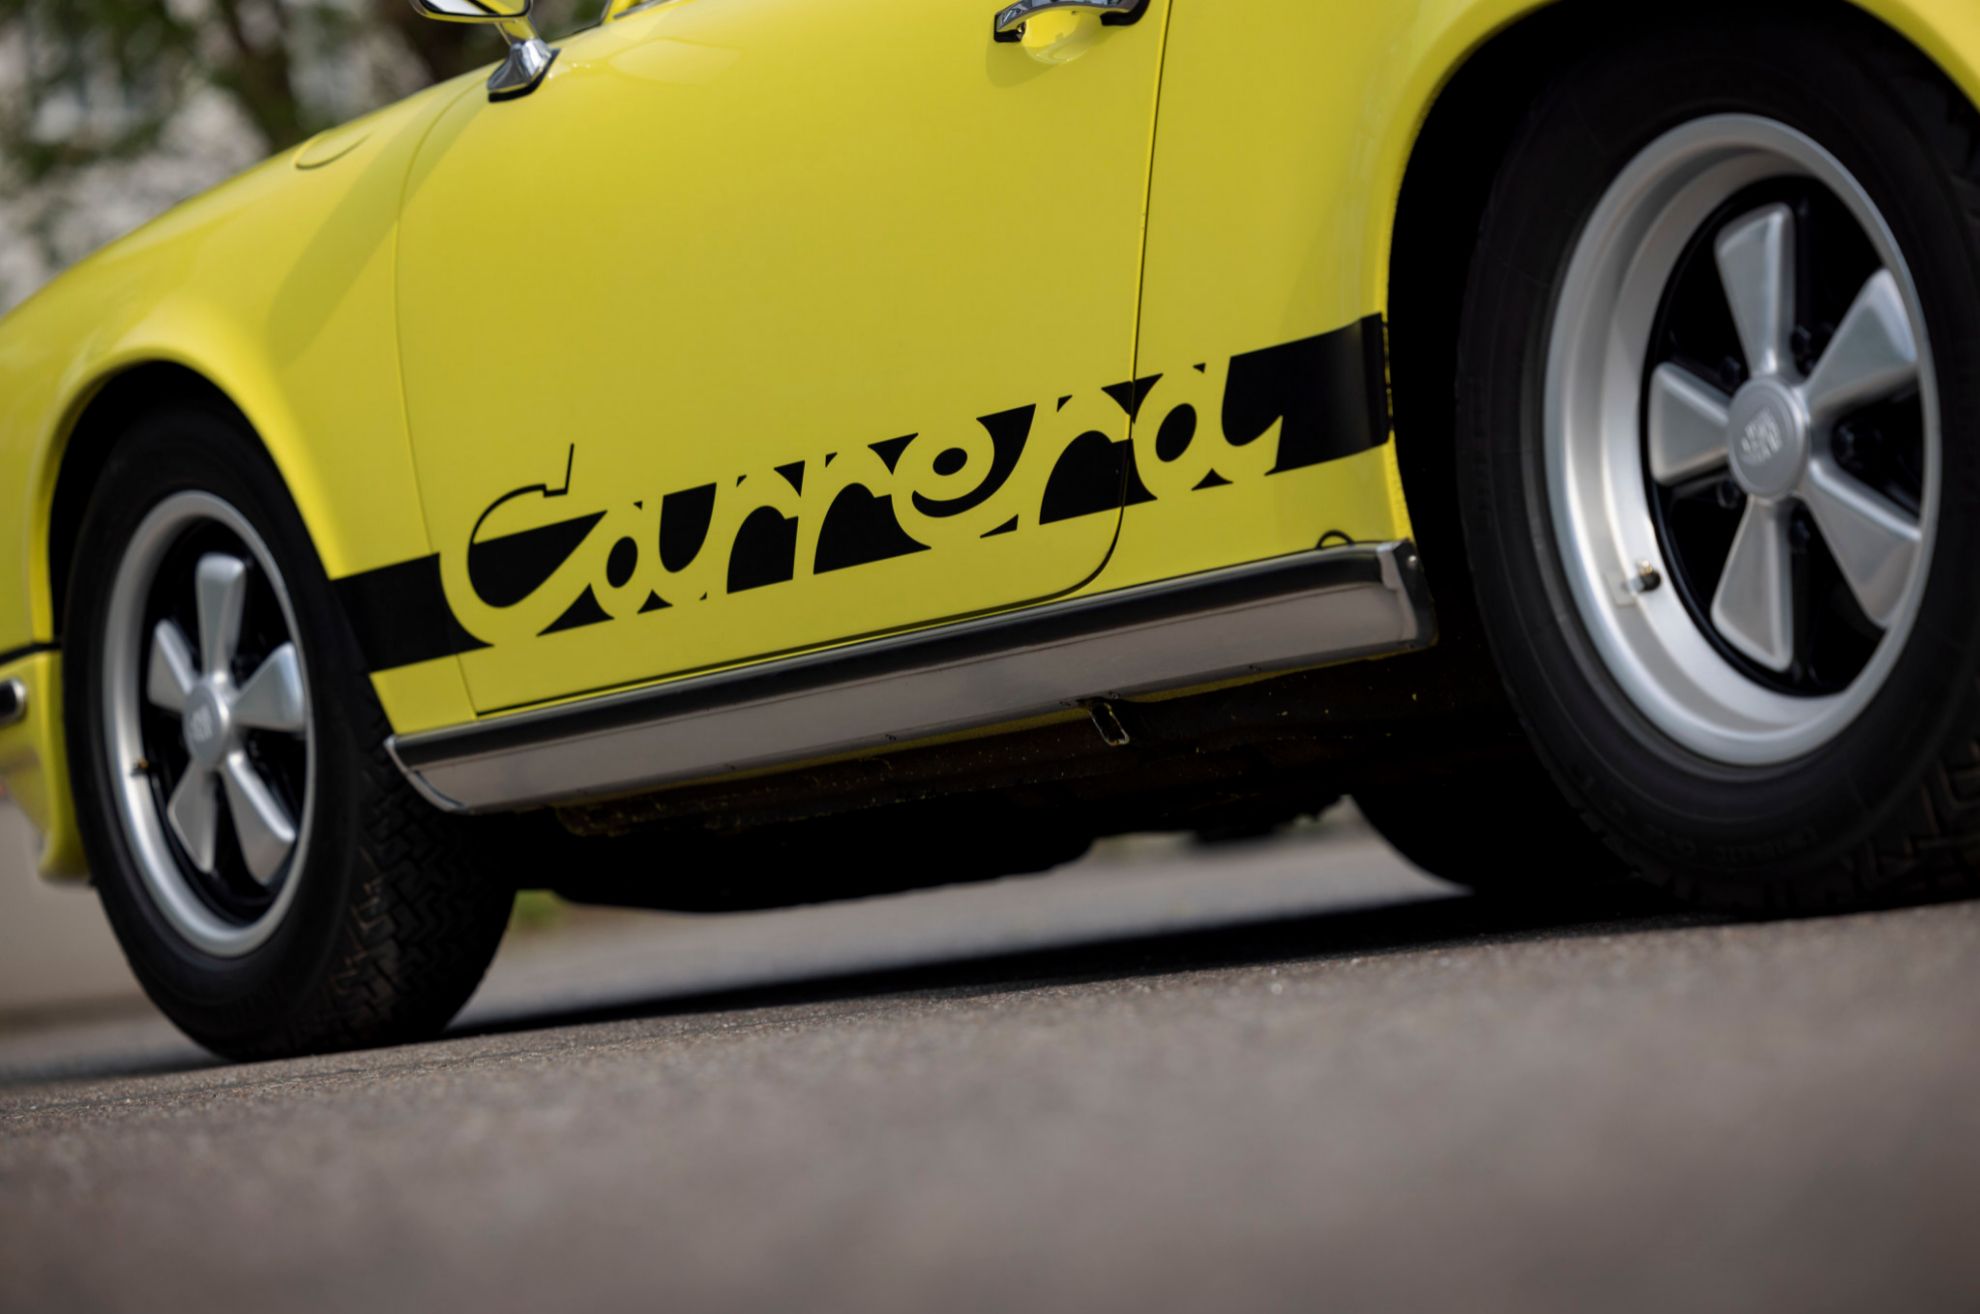 La denominación Carrera se estrenó en el 911 en este modelo.